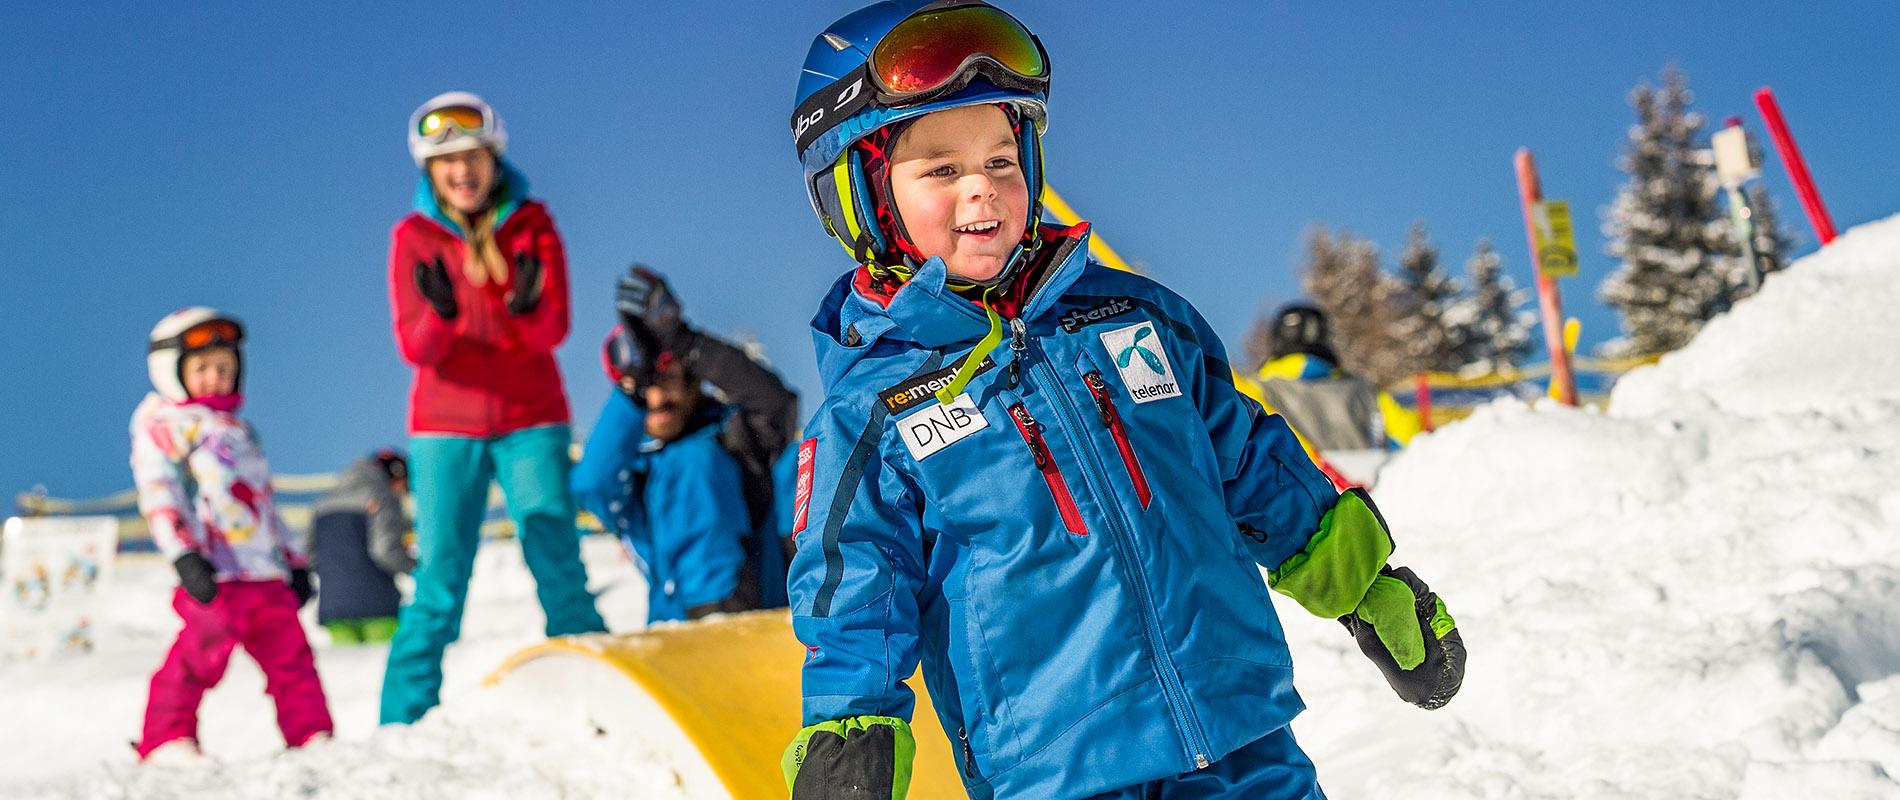 familienskigebiet_flachau_Ski amade Tauernhof Familien Urlaub Snow space salzburg Skifahren